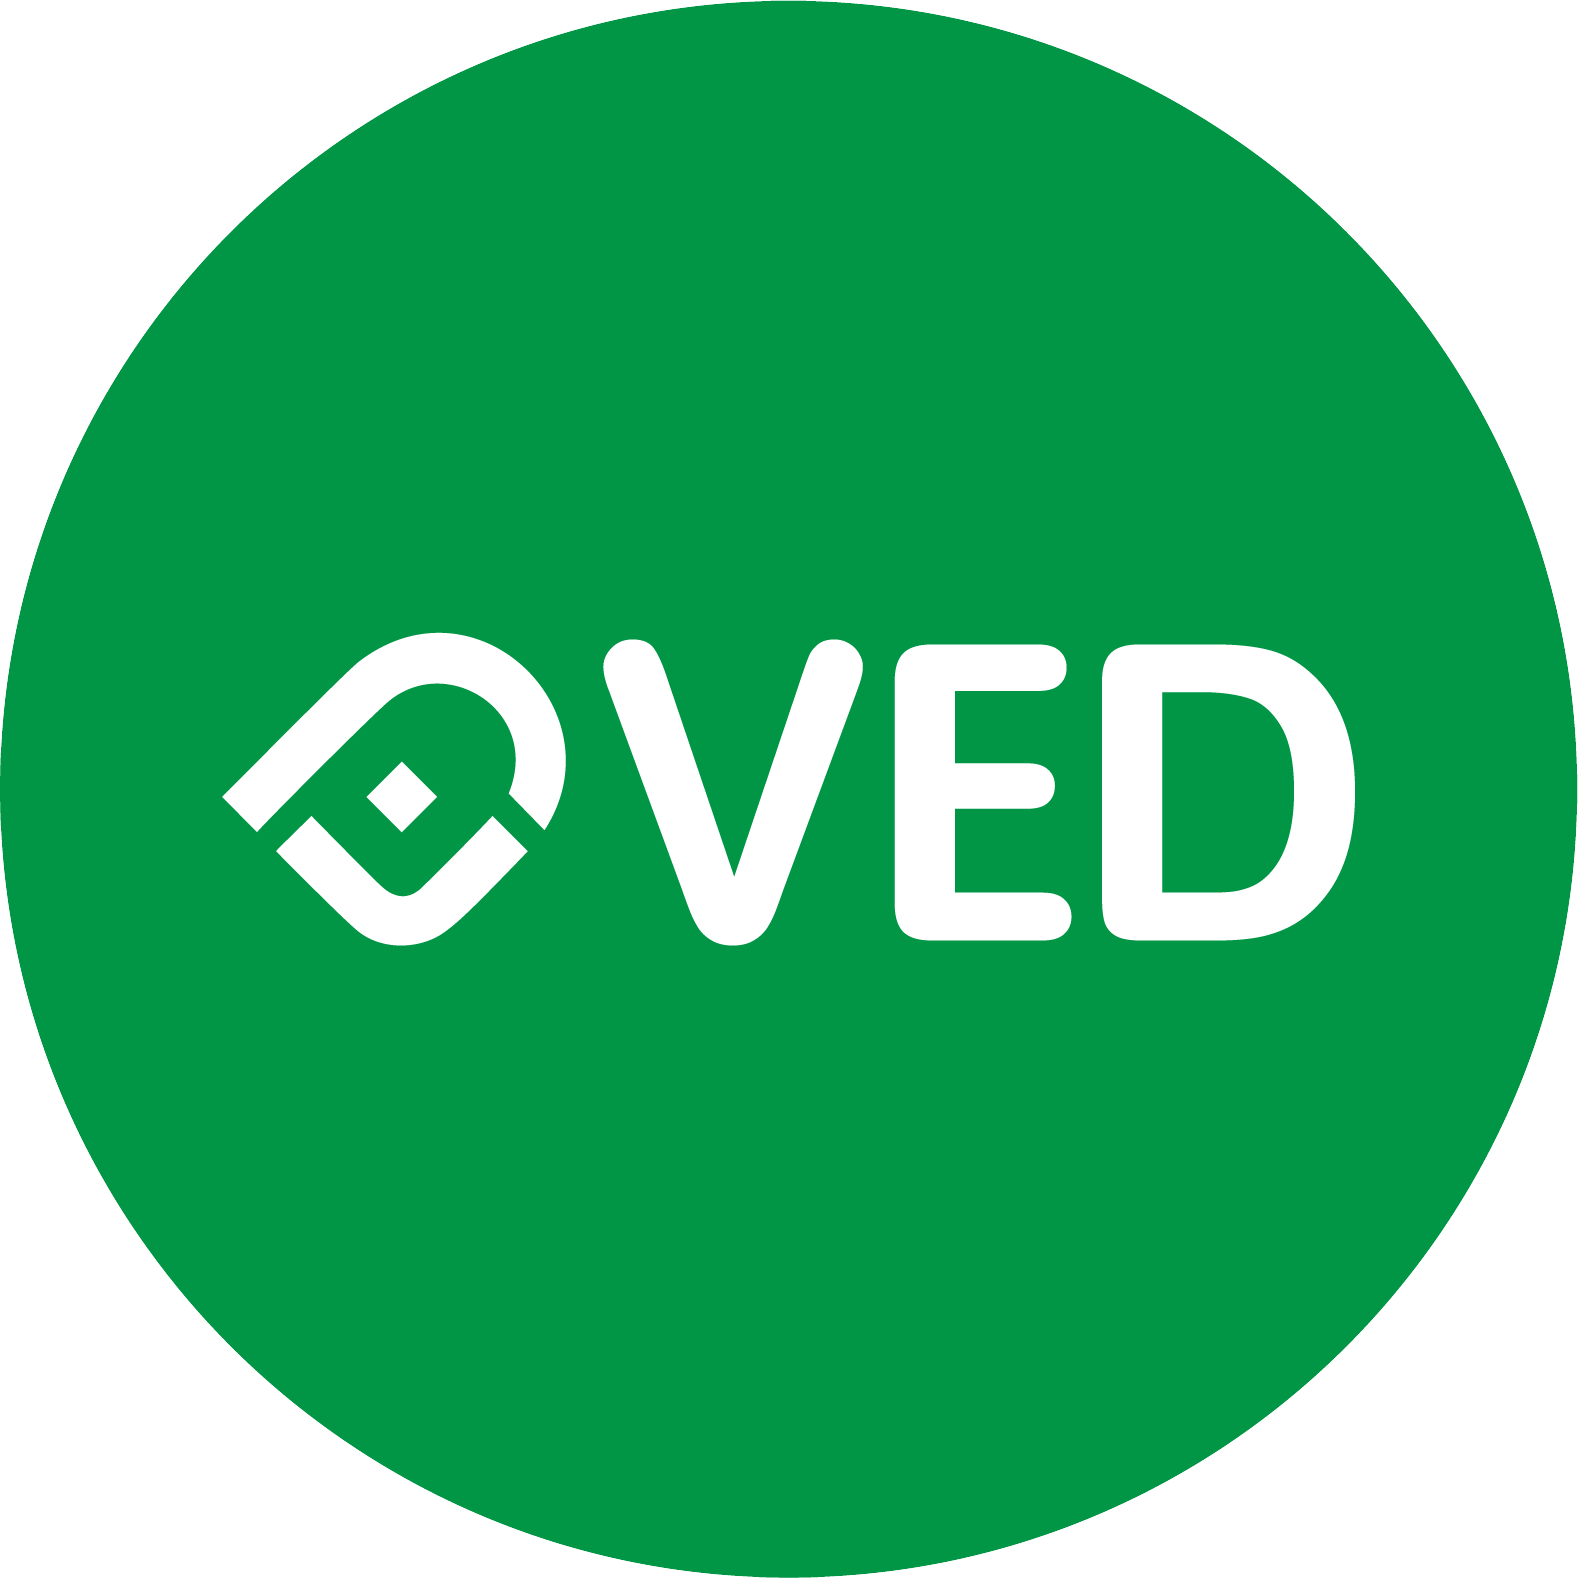 Ved Logo - logo-VED-pantone-355C-94c-100y1.png - ved